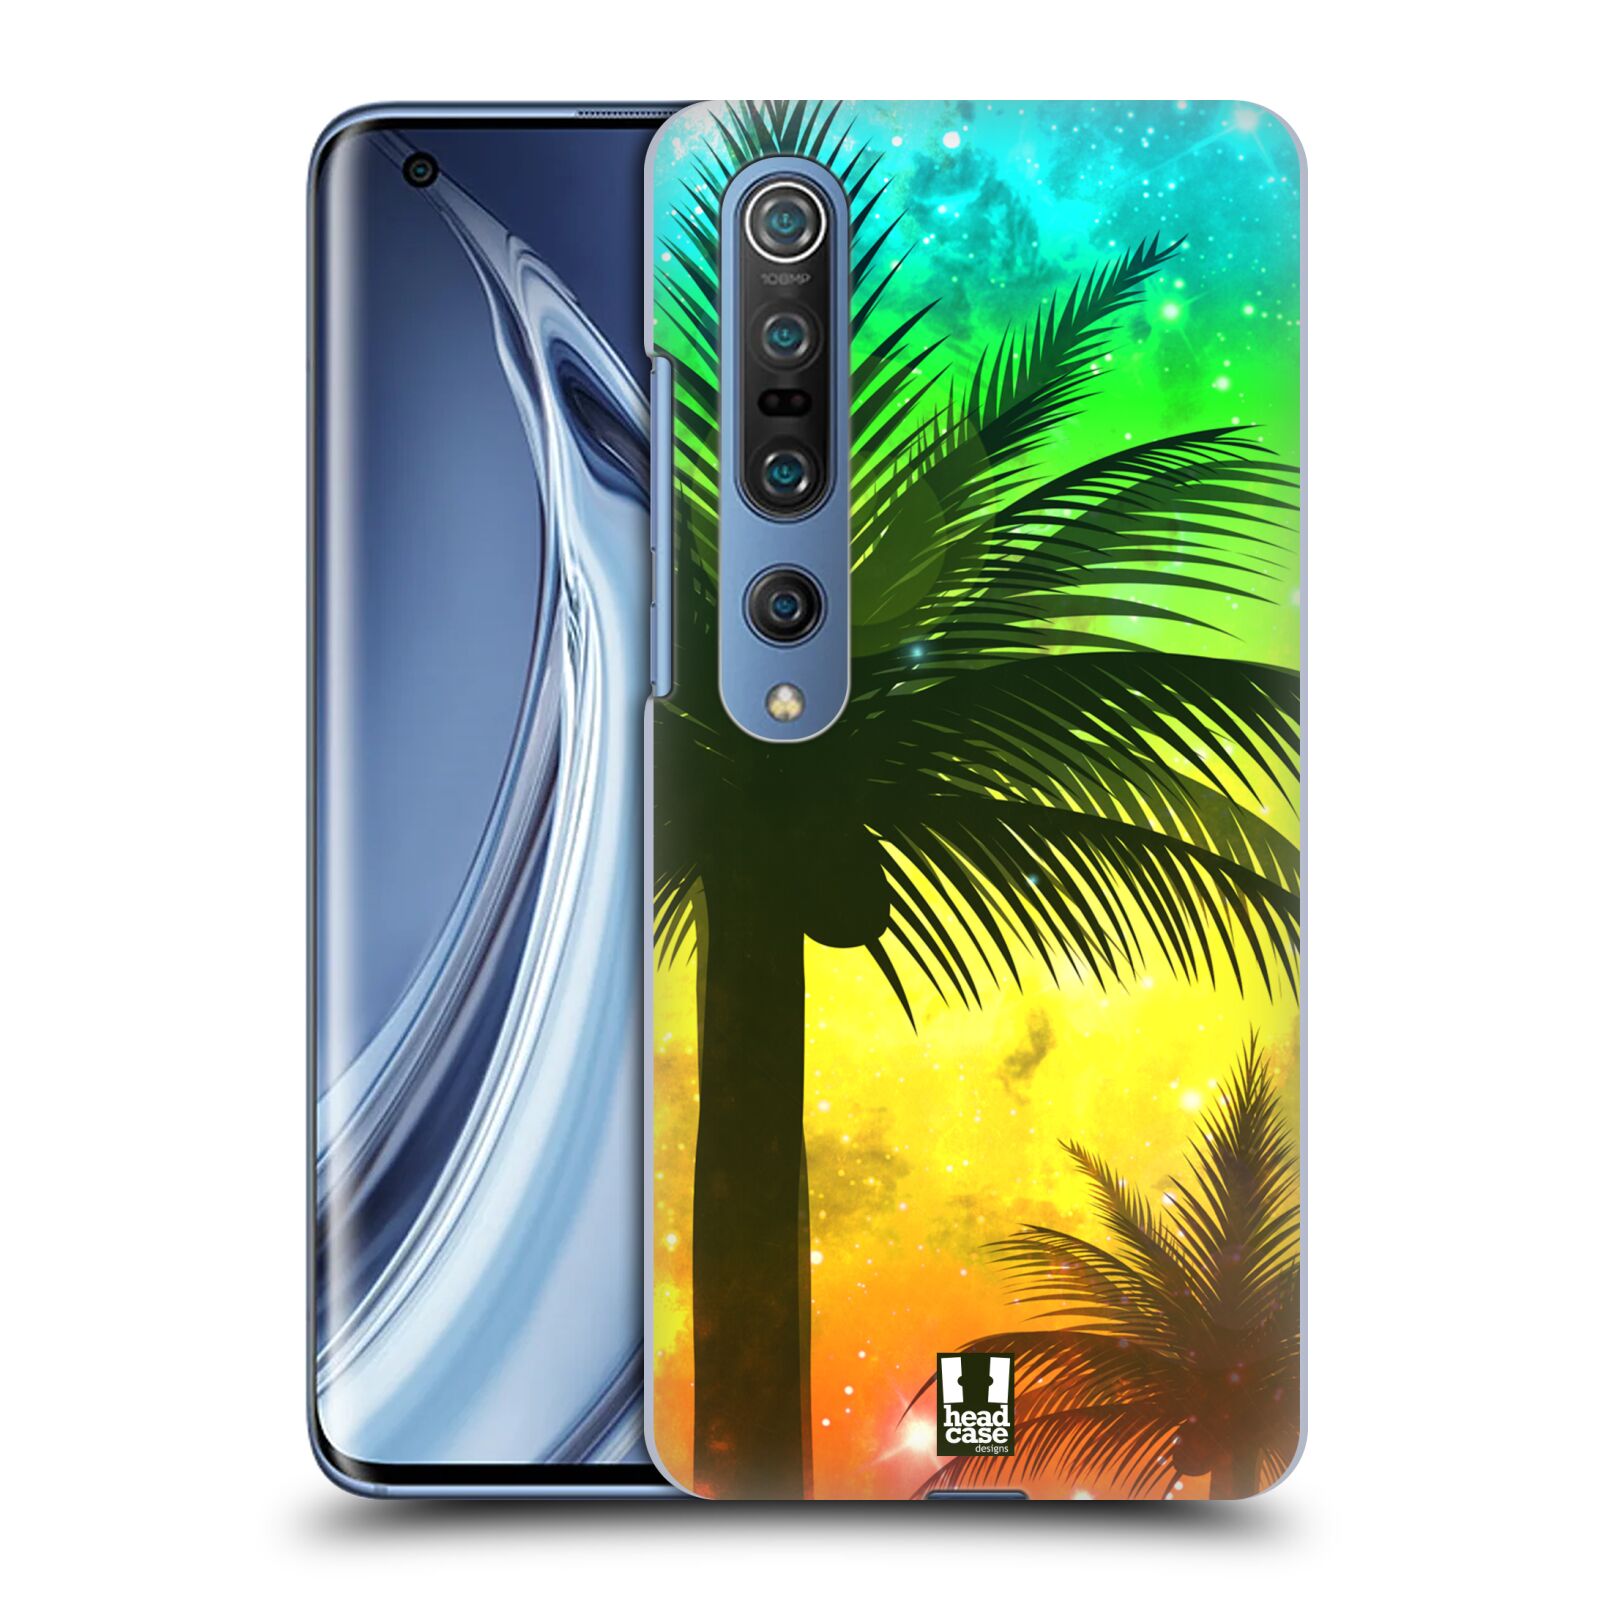 HEAD CASE plastový obal na mobil Xiaomi Mi 10 vzor Kreslený motiv silueta moře a palmy ZELENÁ A ORANŽOVÁ